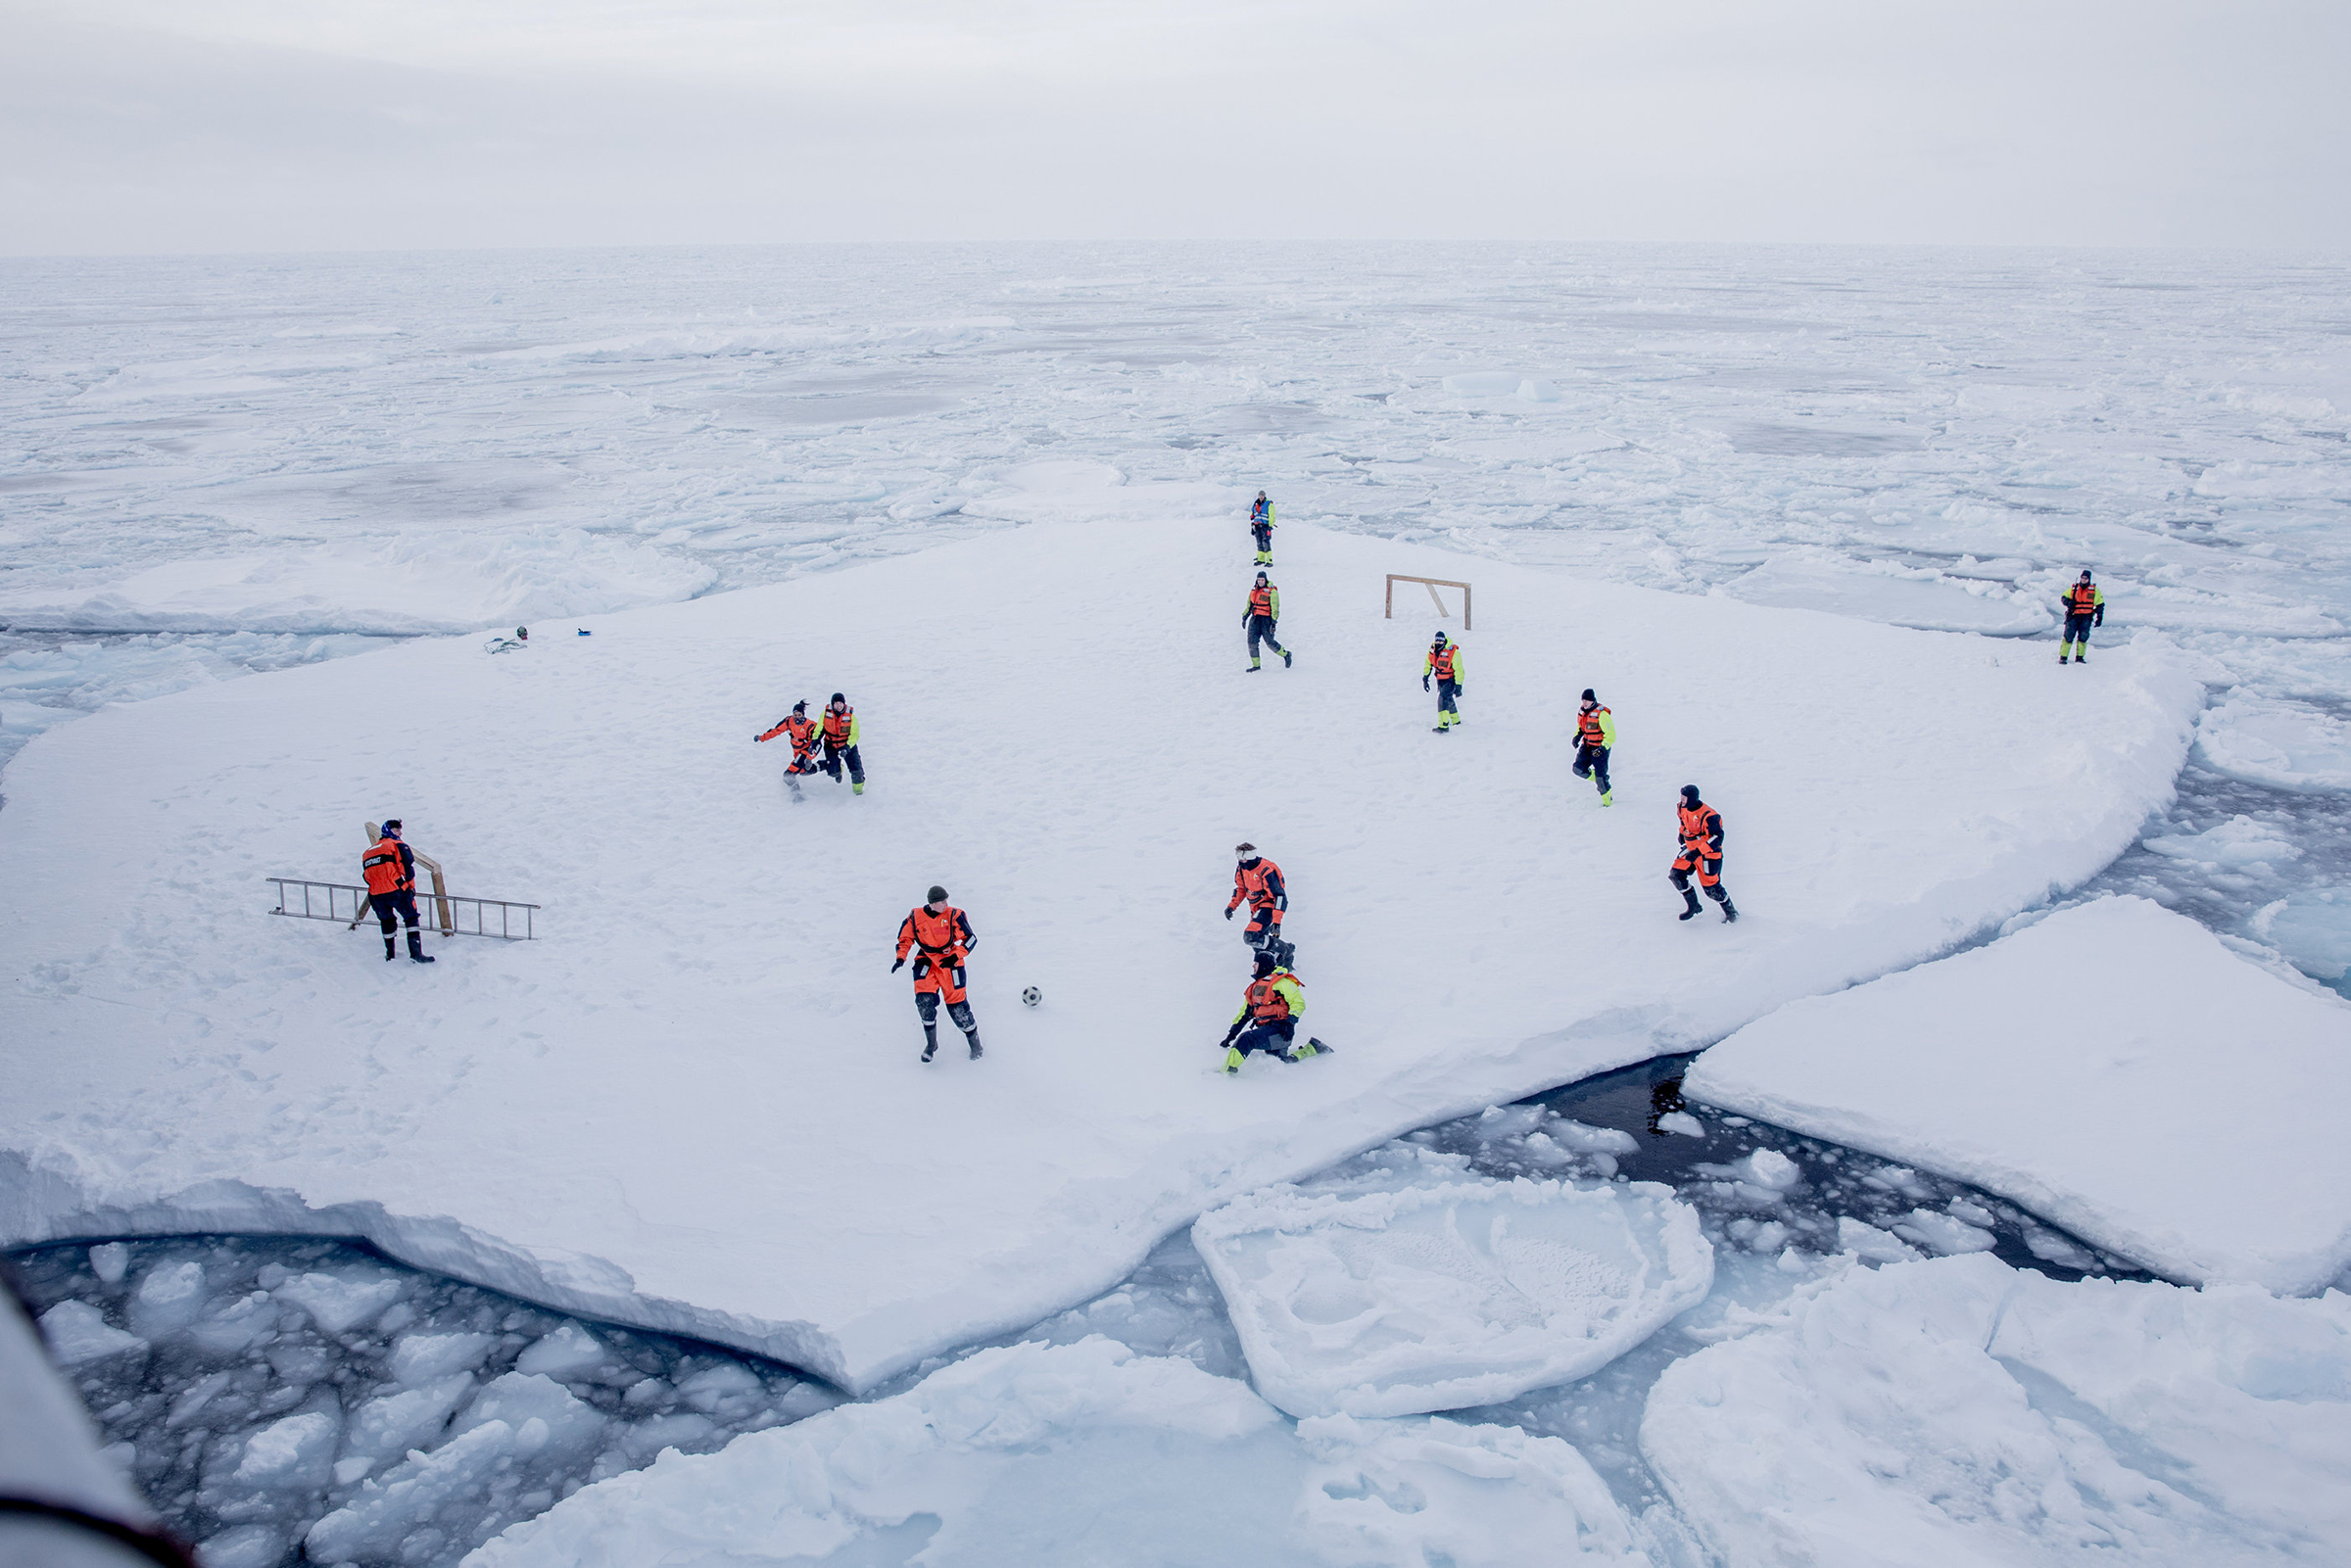 Март. Гренландия. Служащие норвежского военно-морского флота и ученые из Норвежского института морских исследований играют в футбол, пока вооруженная охрана защищает их от белых медведей
